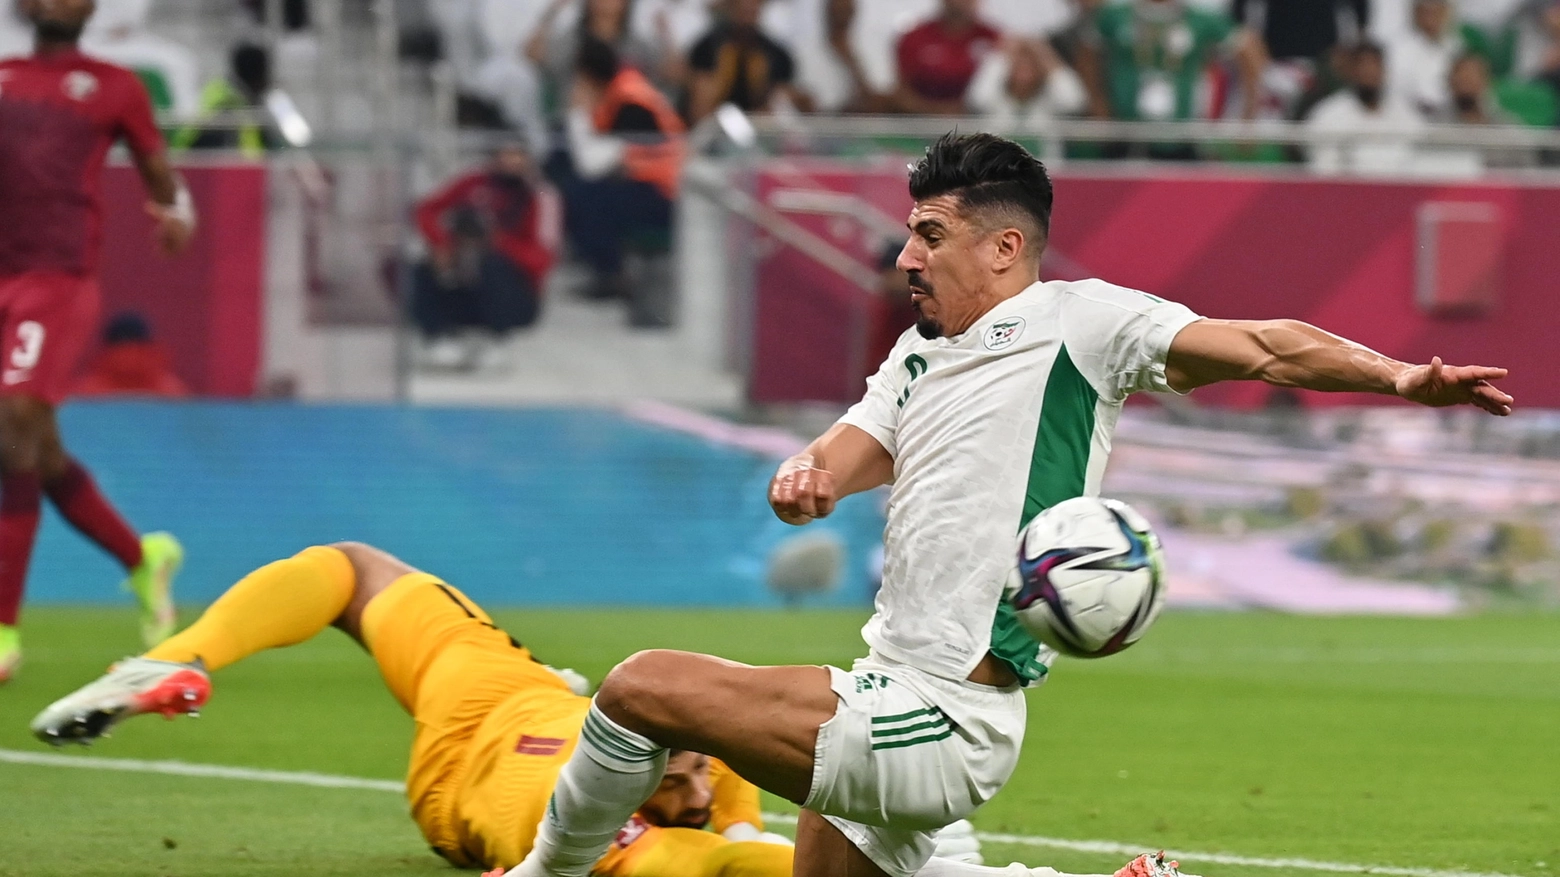 Baghdad Bounedjah, Algeria, ha sfiorato il gol del possibile 1-1 contro la Mauritania